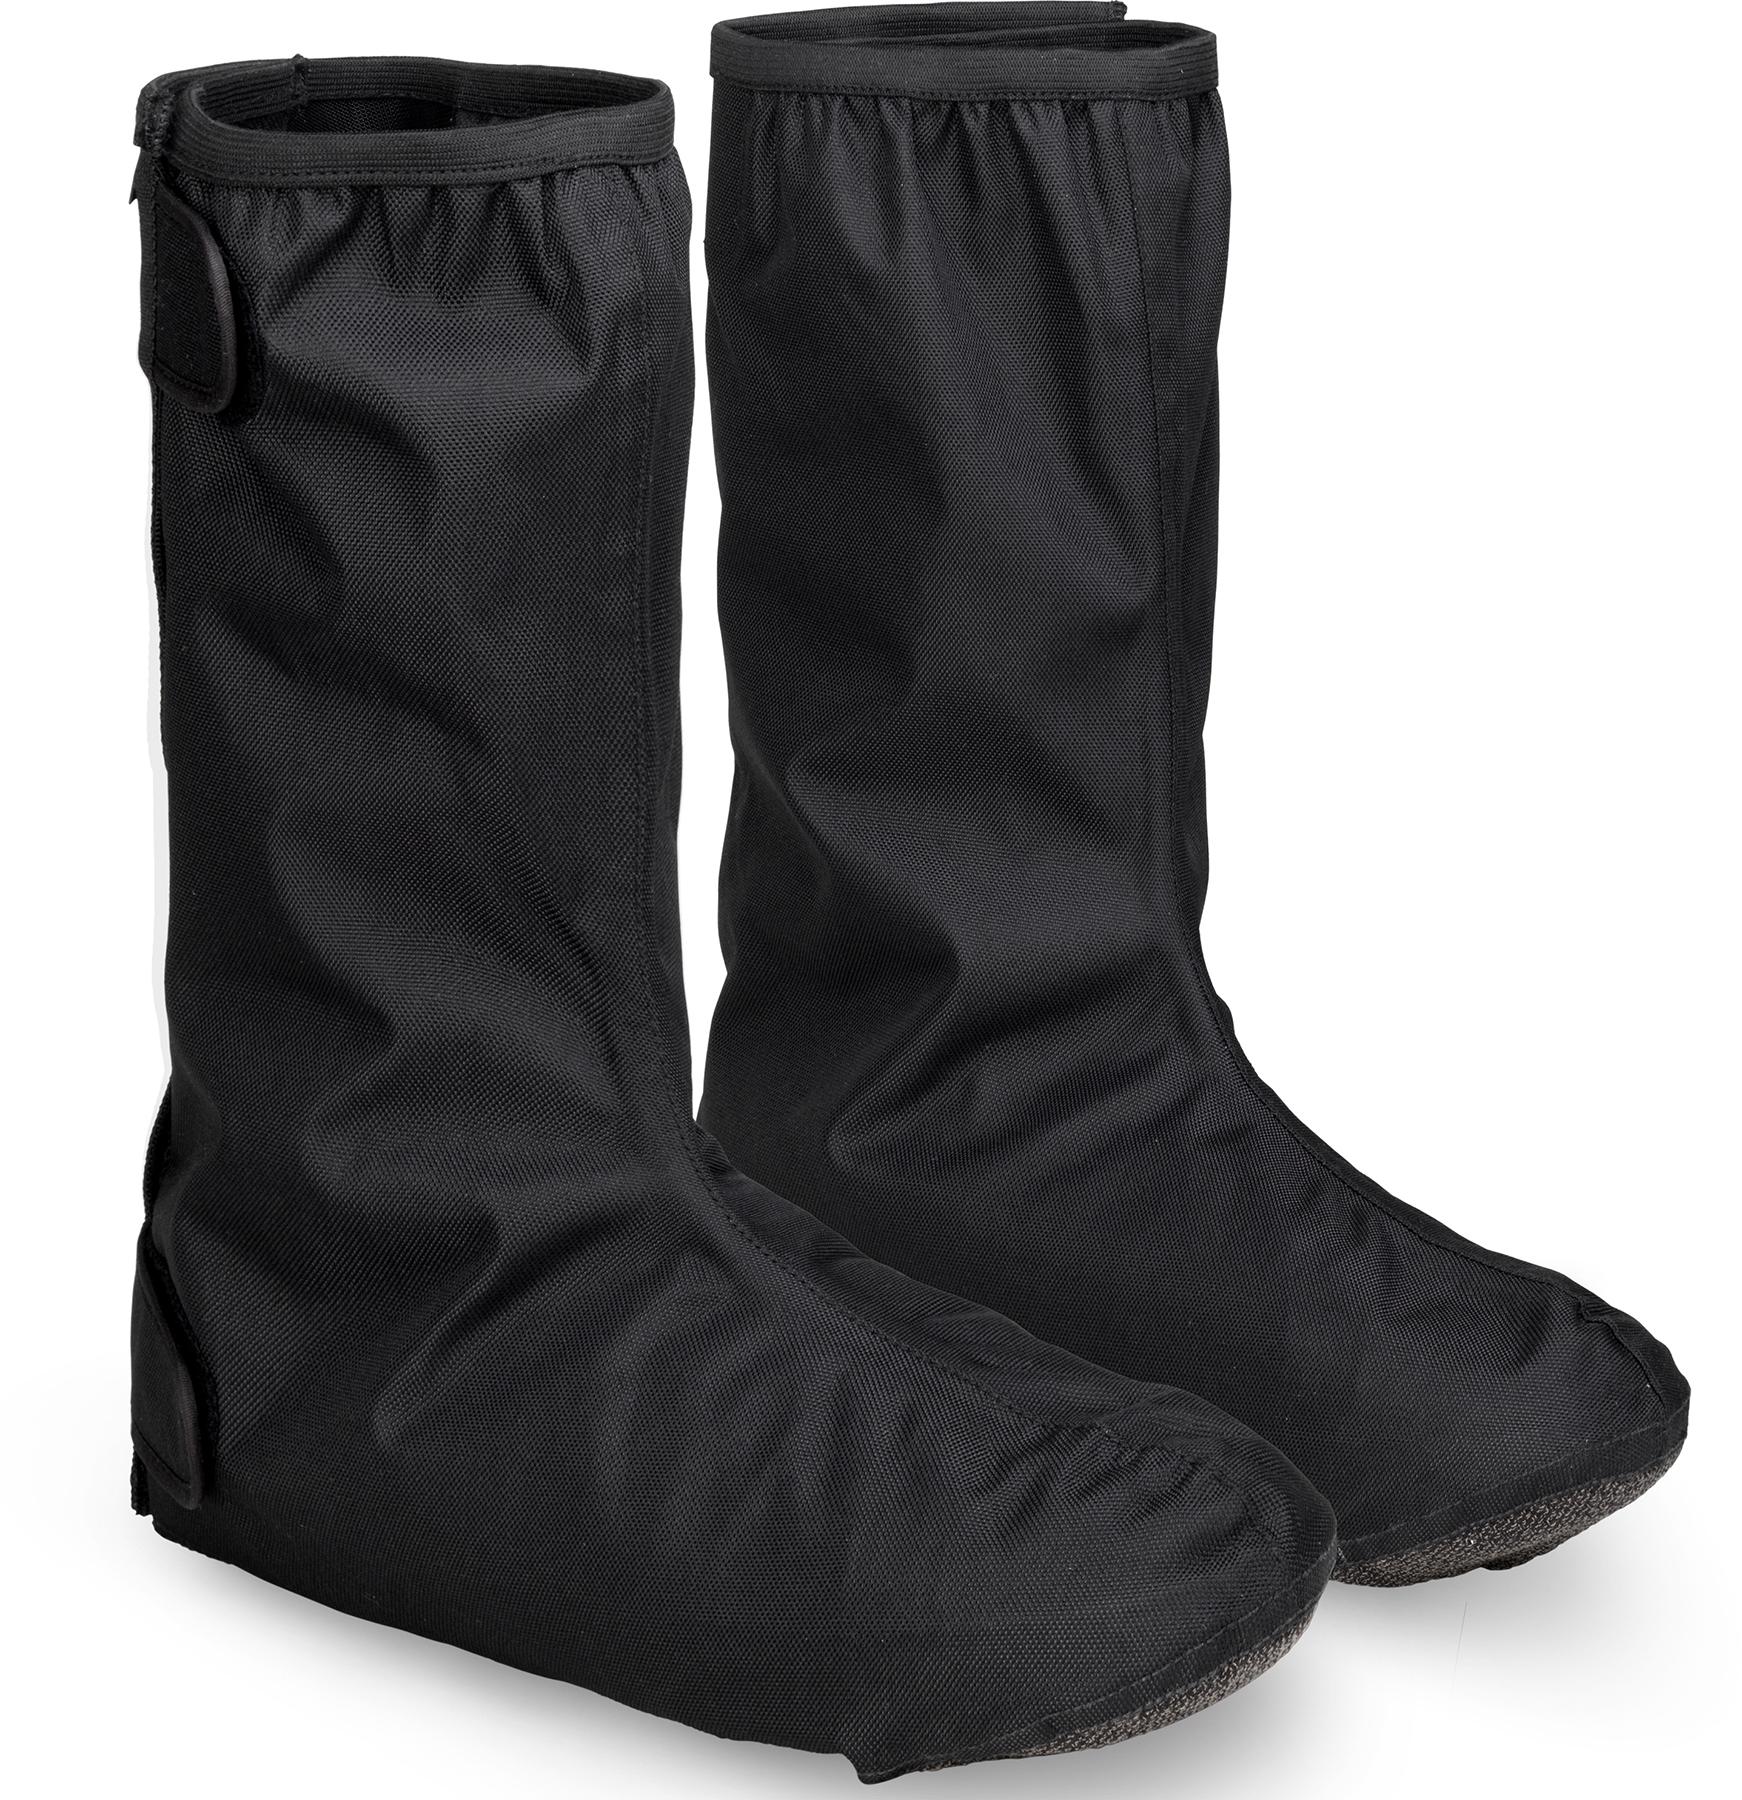 Gripgrab Dryfoot Waterproof Everyday Shoe Covers 2 - Black